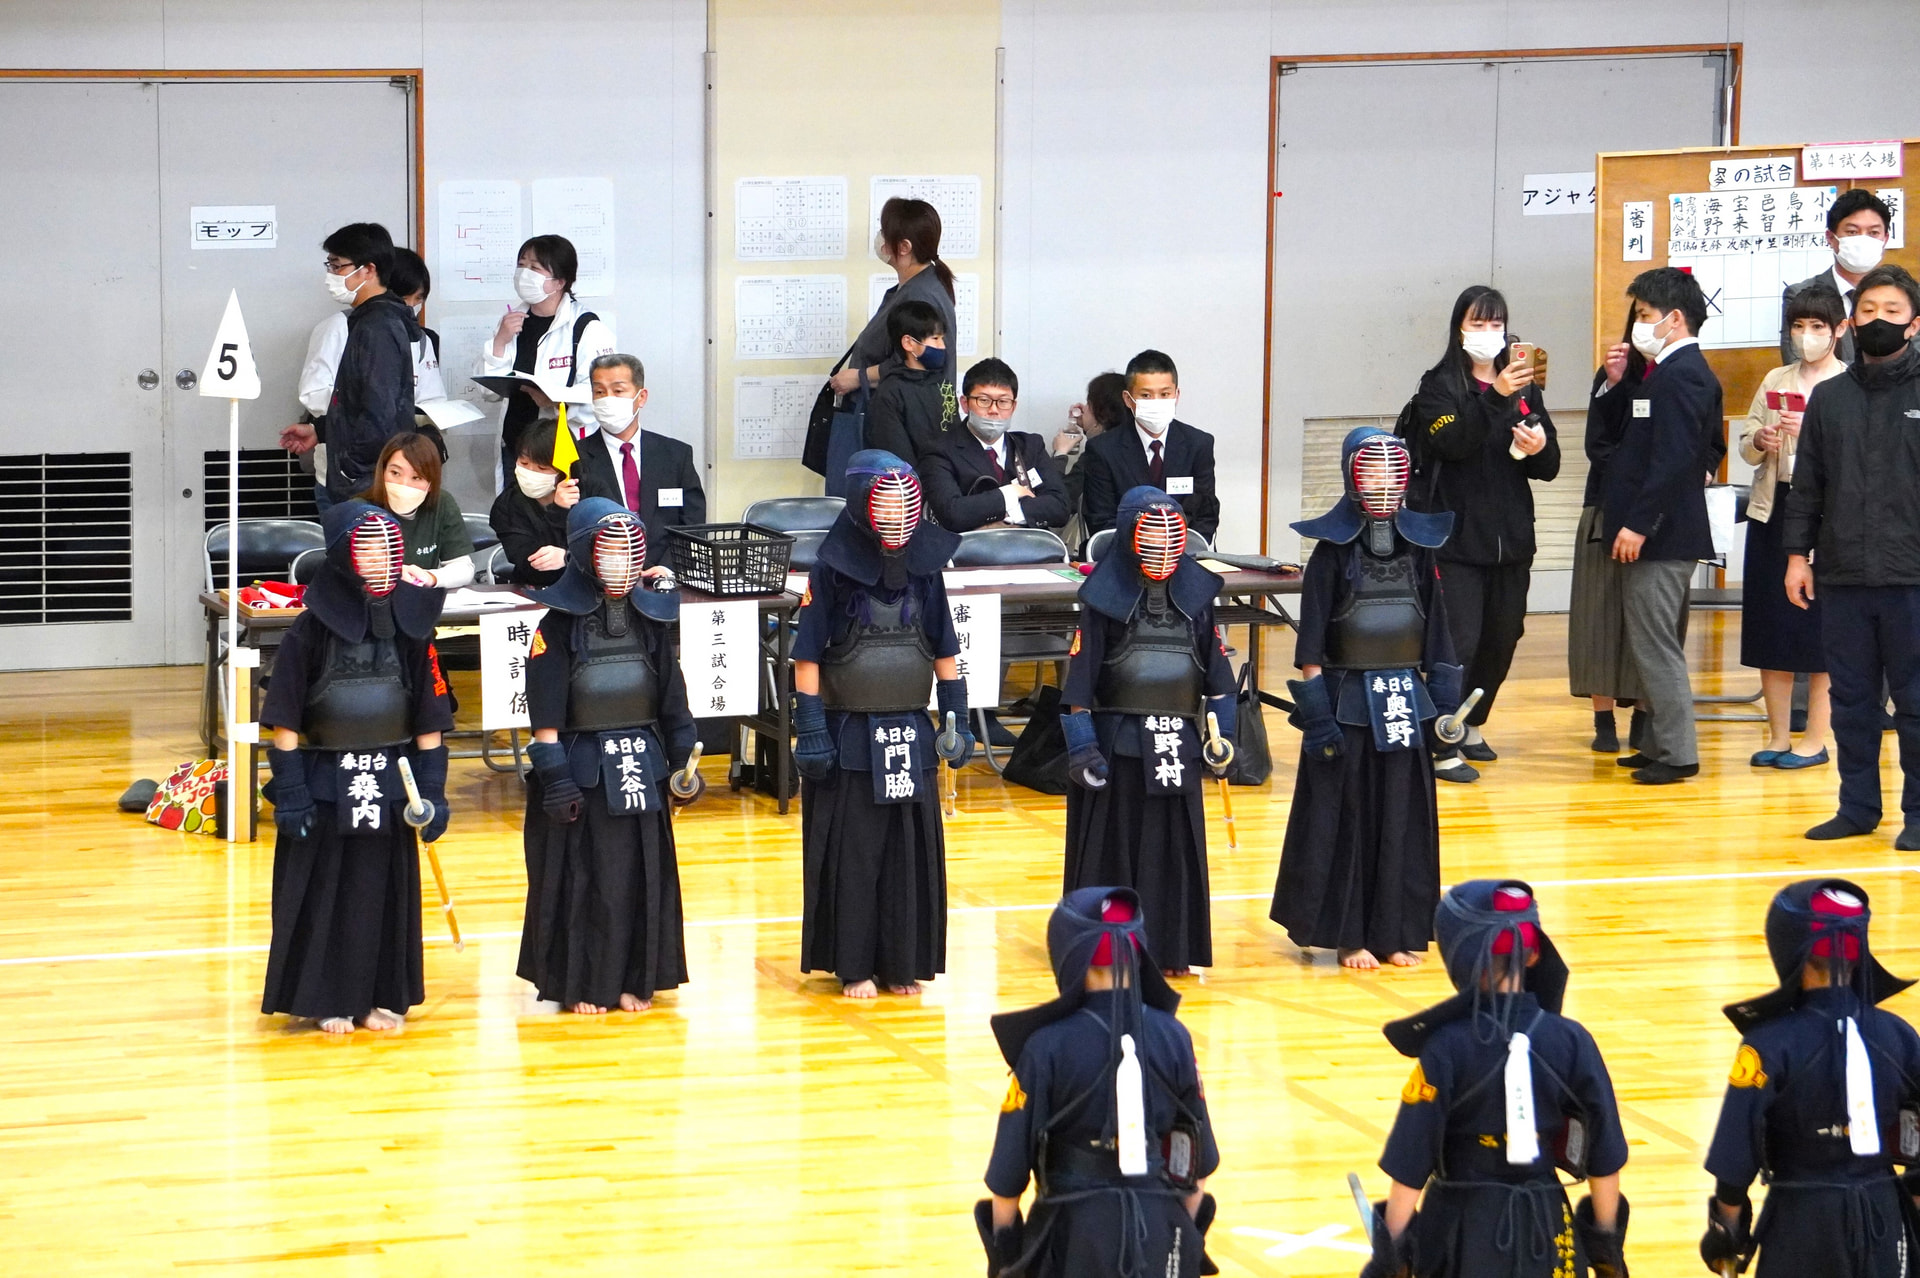 第35回玉田杯争奪少年剣道錬成大会に参加しました。